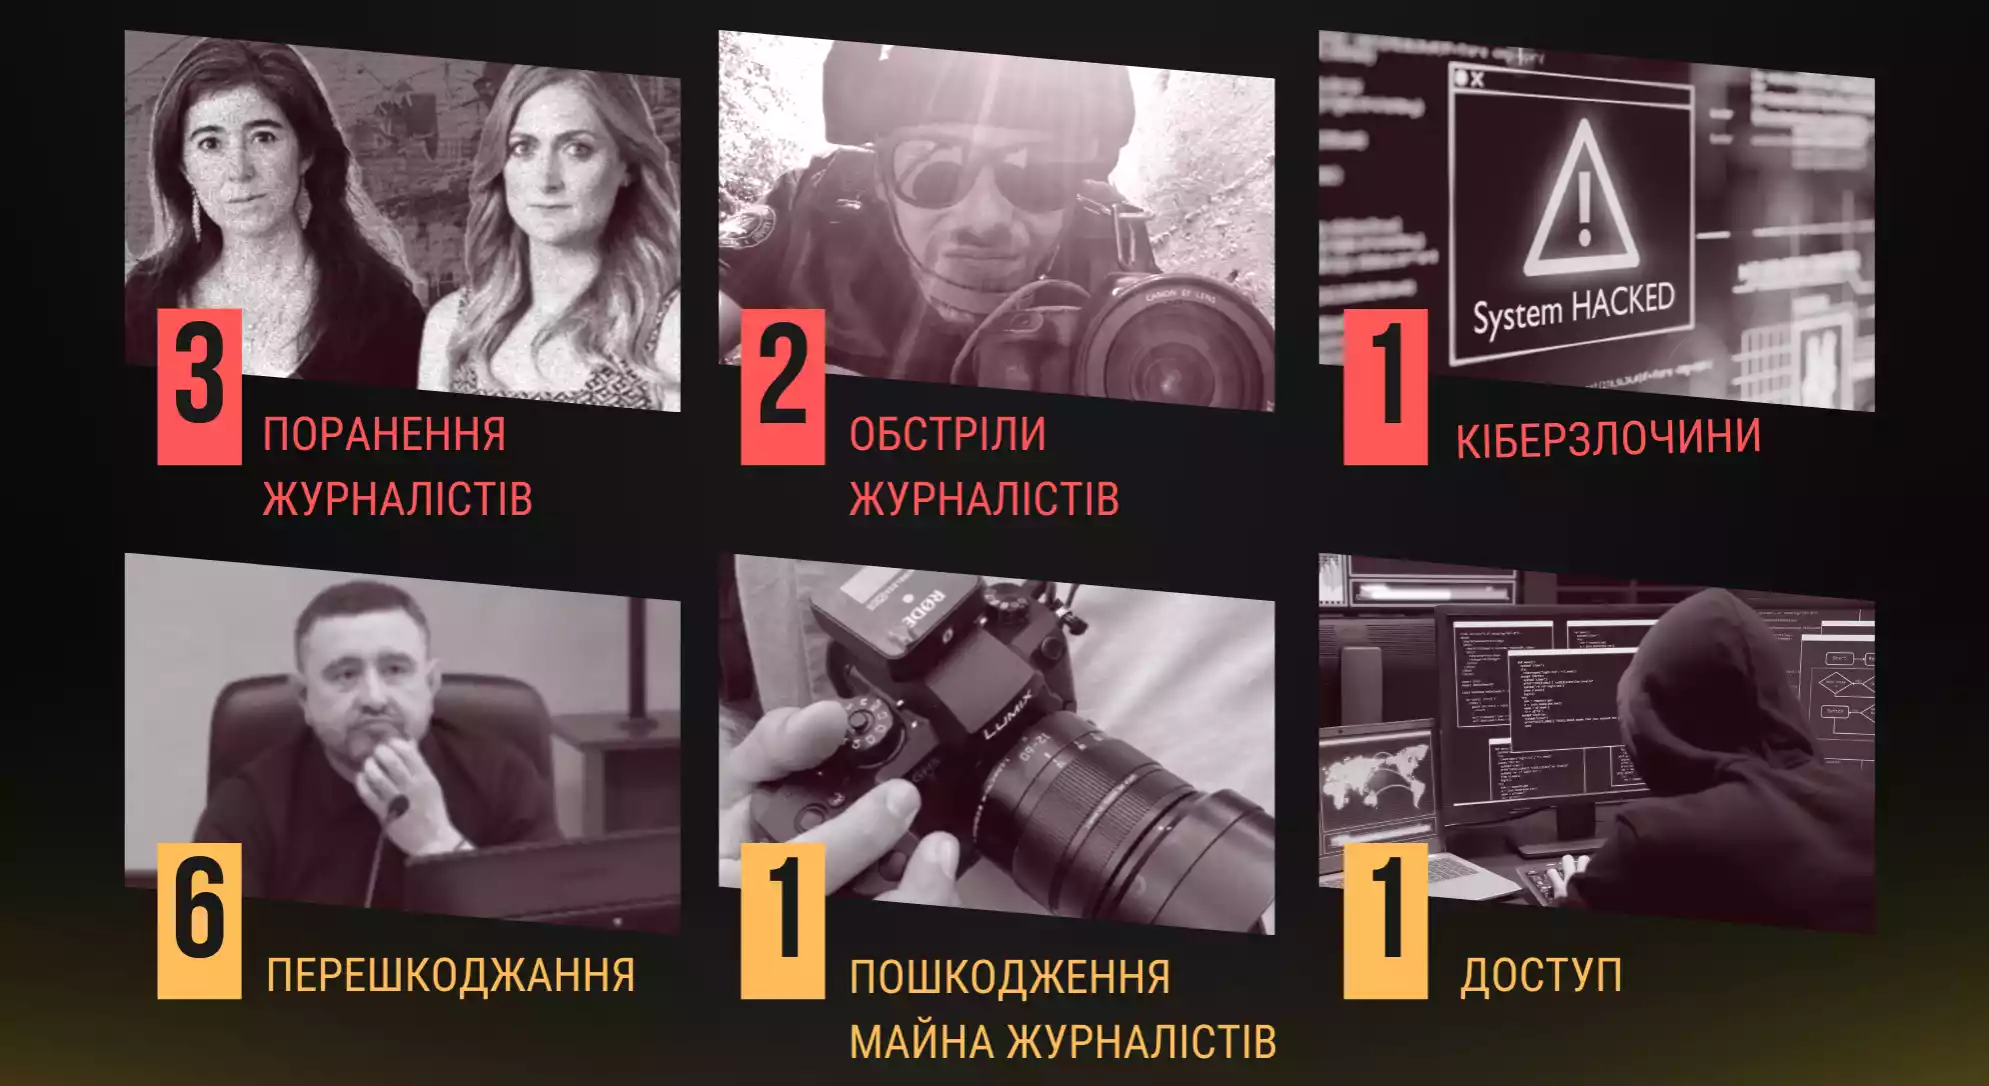 ІМІ зафіксував у червні 14 злочинів проти свободи слова в Україні